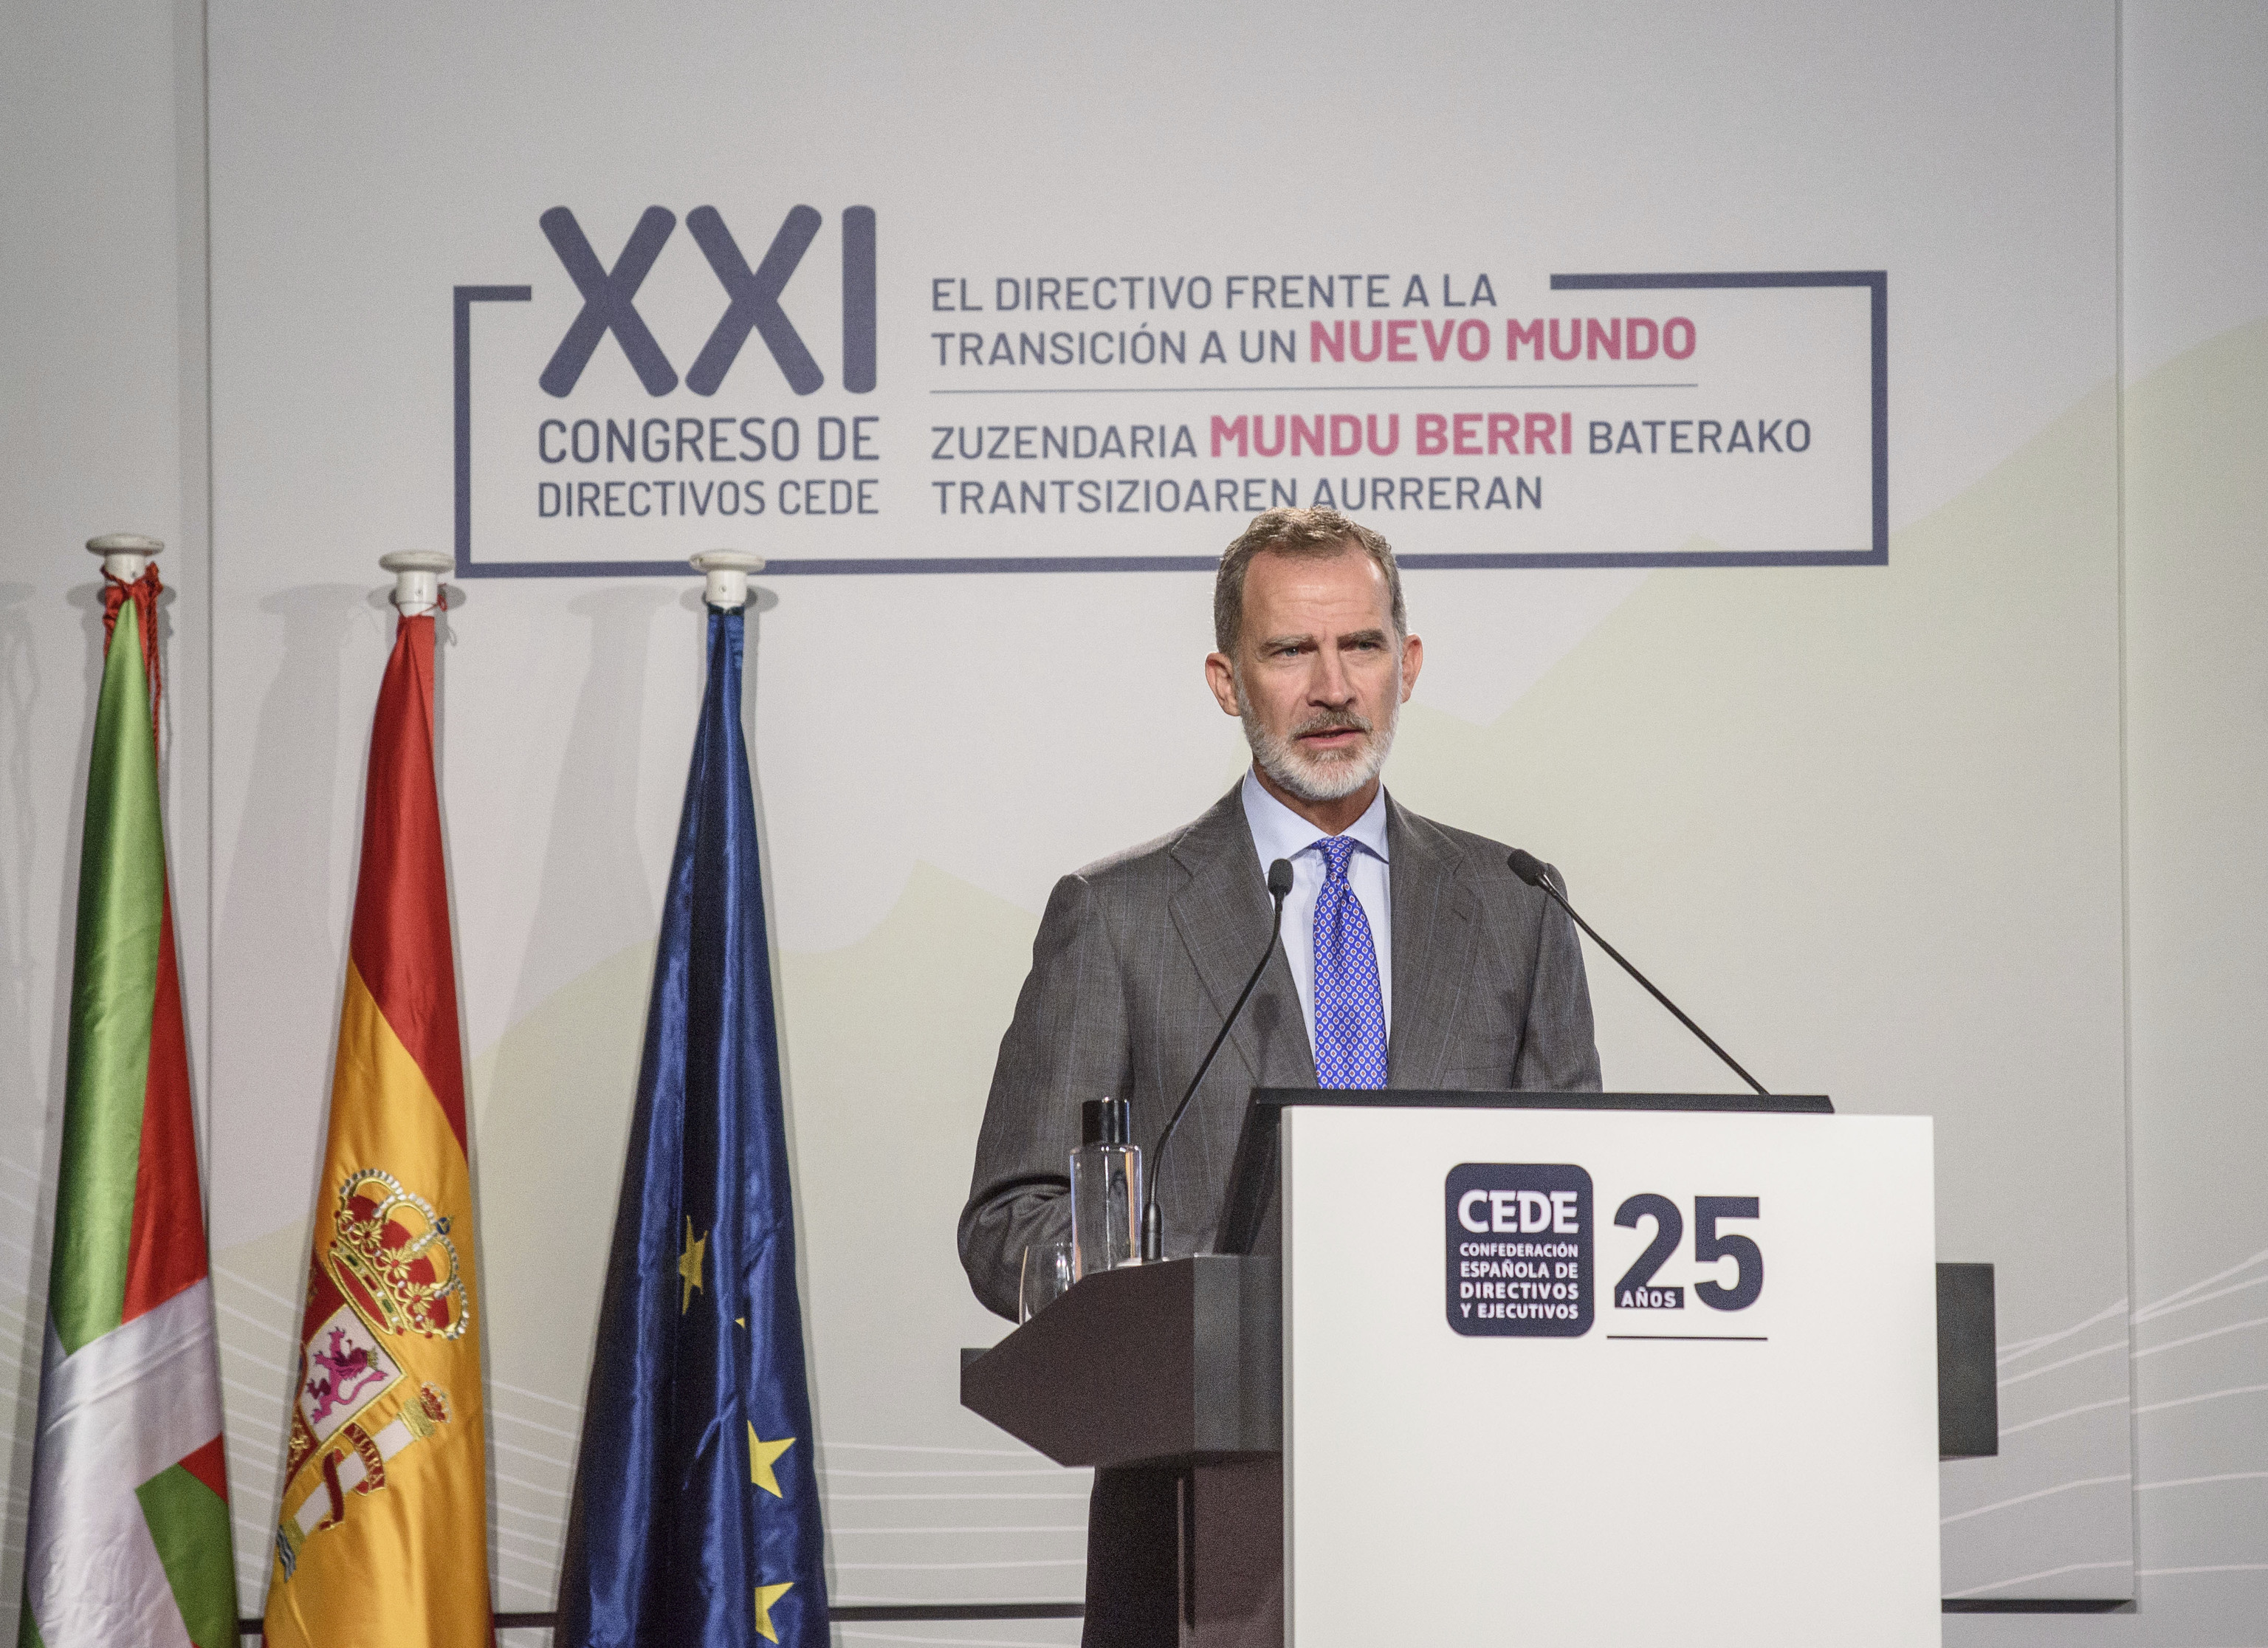 El Rey Felipe VI participa en el XXI Congreso de Directivos de la fundación CEDE.